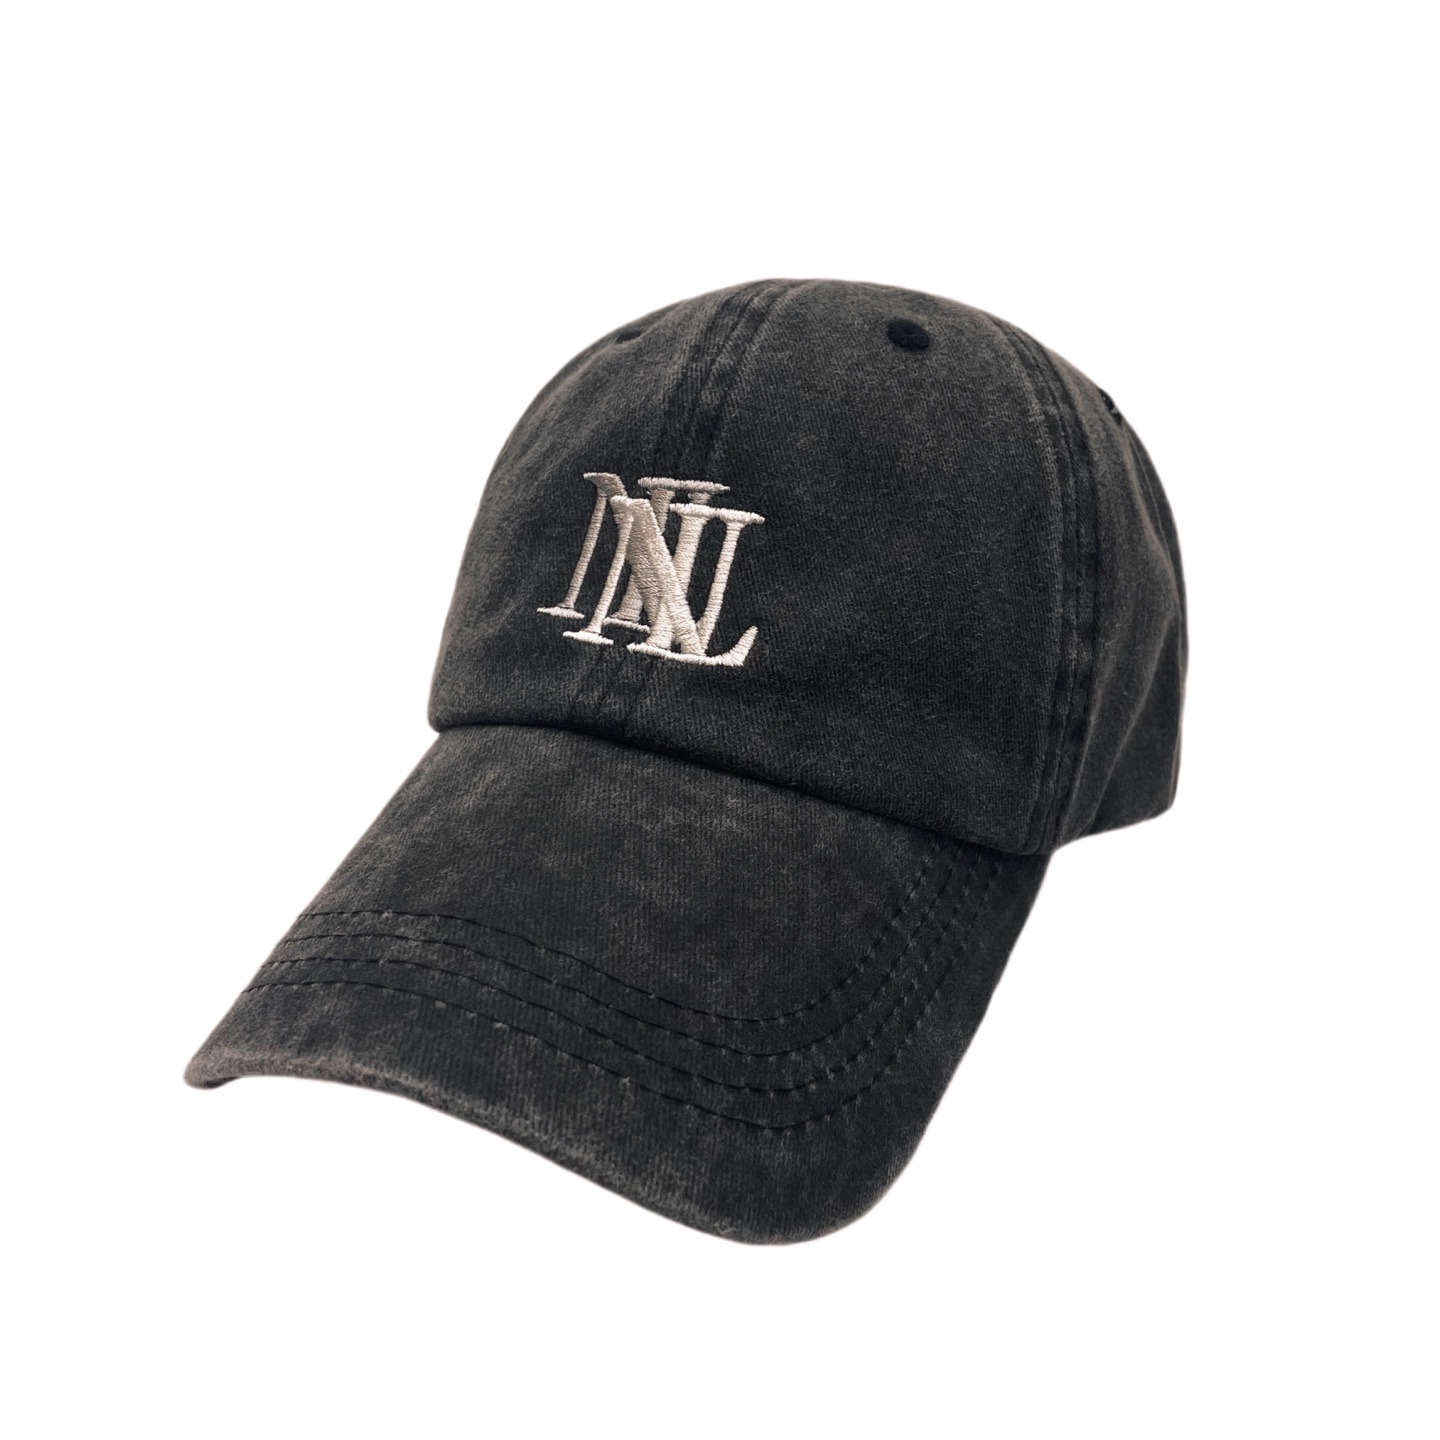 ヌーベルミエール デニム ブラック ベースボールキャップ 帽子